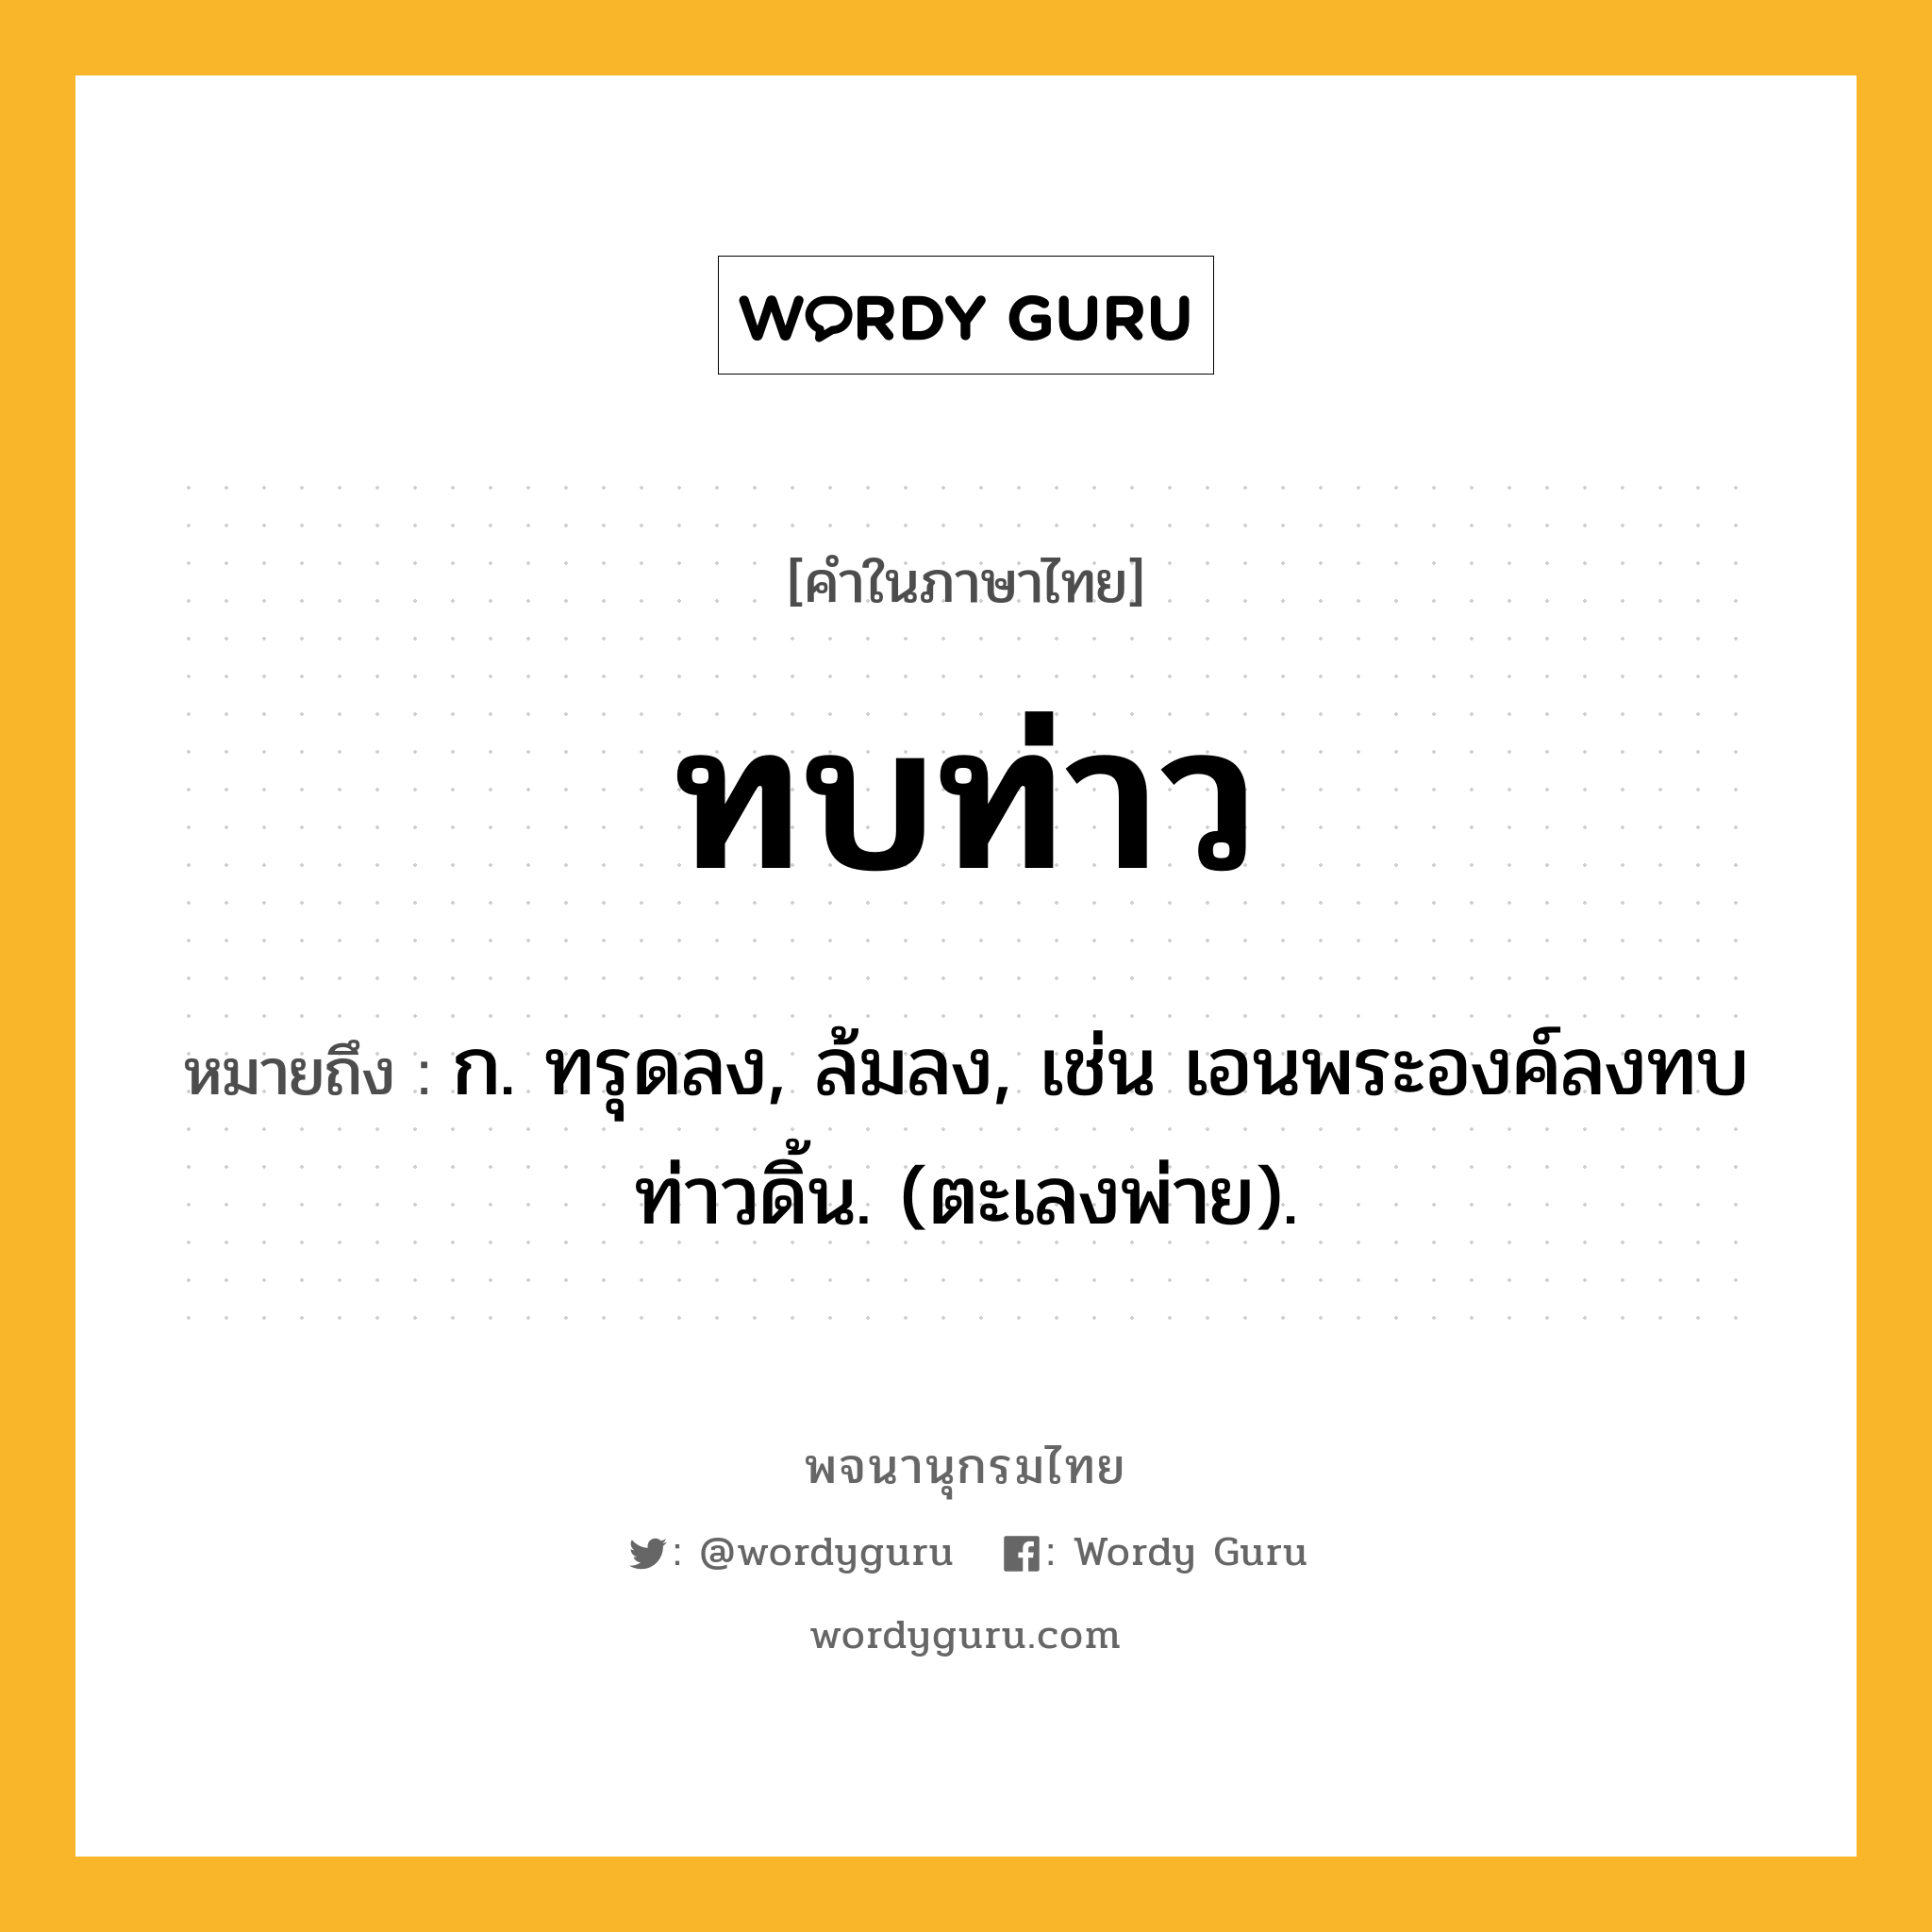 ทบท่าว ความหมาย หมายถึงอะไร?, คำในภาษาไทย ทบท่าว หมายถึง ก. ทรุดลง, ล้มลง, เช่น เอนพระองค์ลงทบ ท่าวดิ้น. (ตะเลงพ่าย).